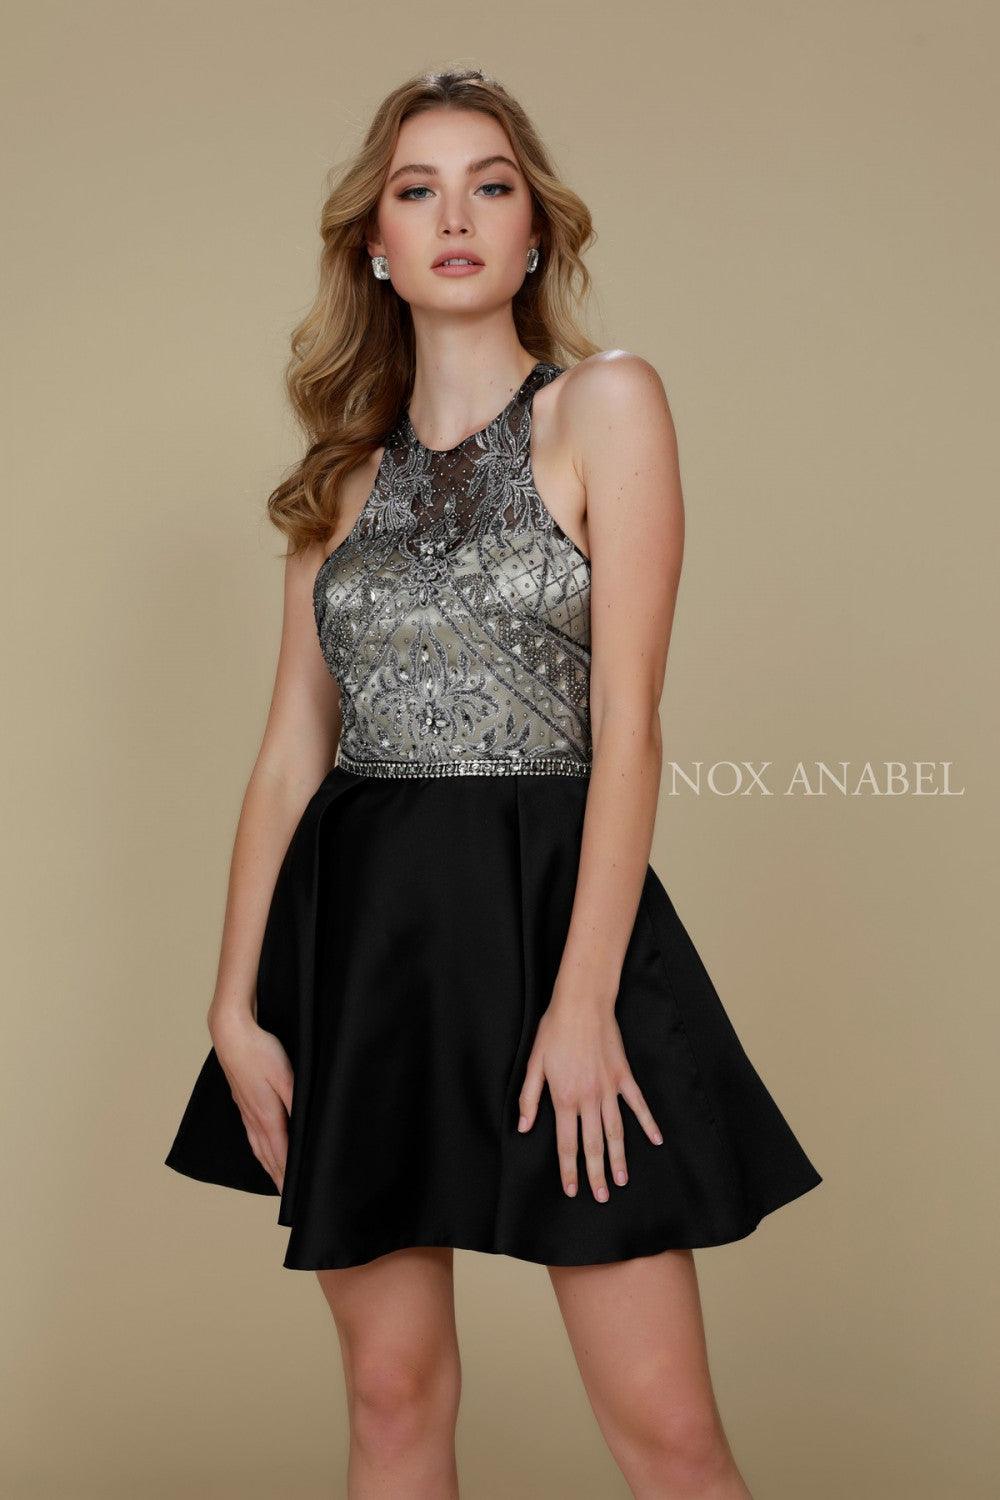 Short Halter Neck Formal Cocktail Dress - The Dress Outlet Nox Anabel